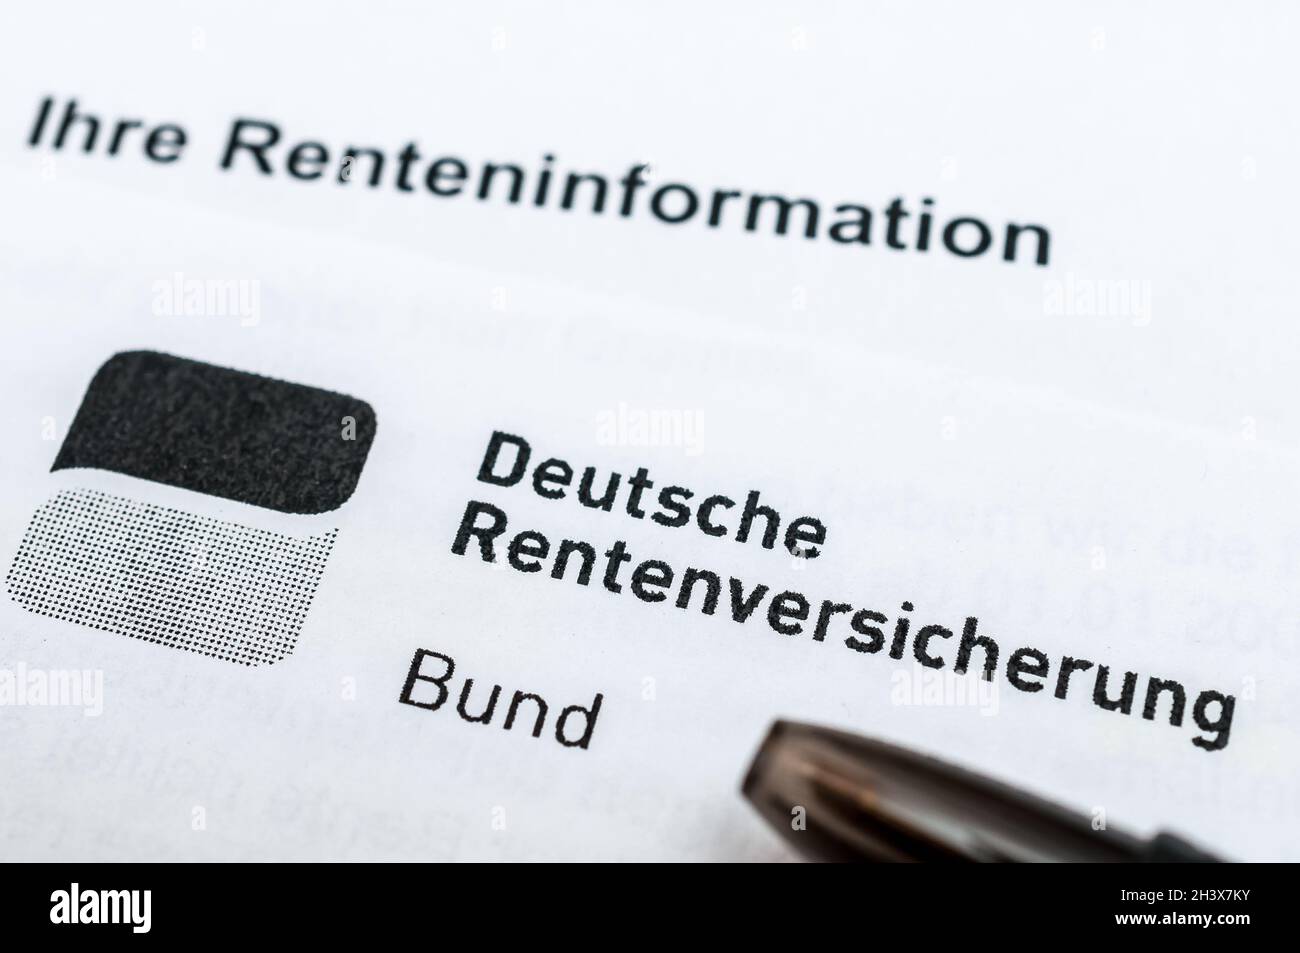 Deutsche Rentenversicherung Bund - Rente mit 68? Stock Photo